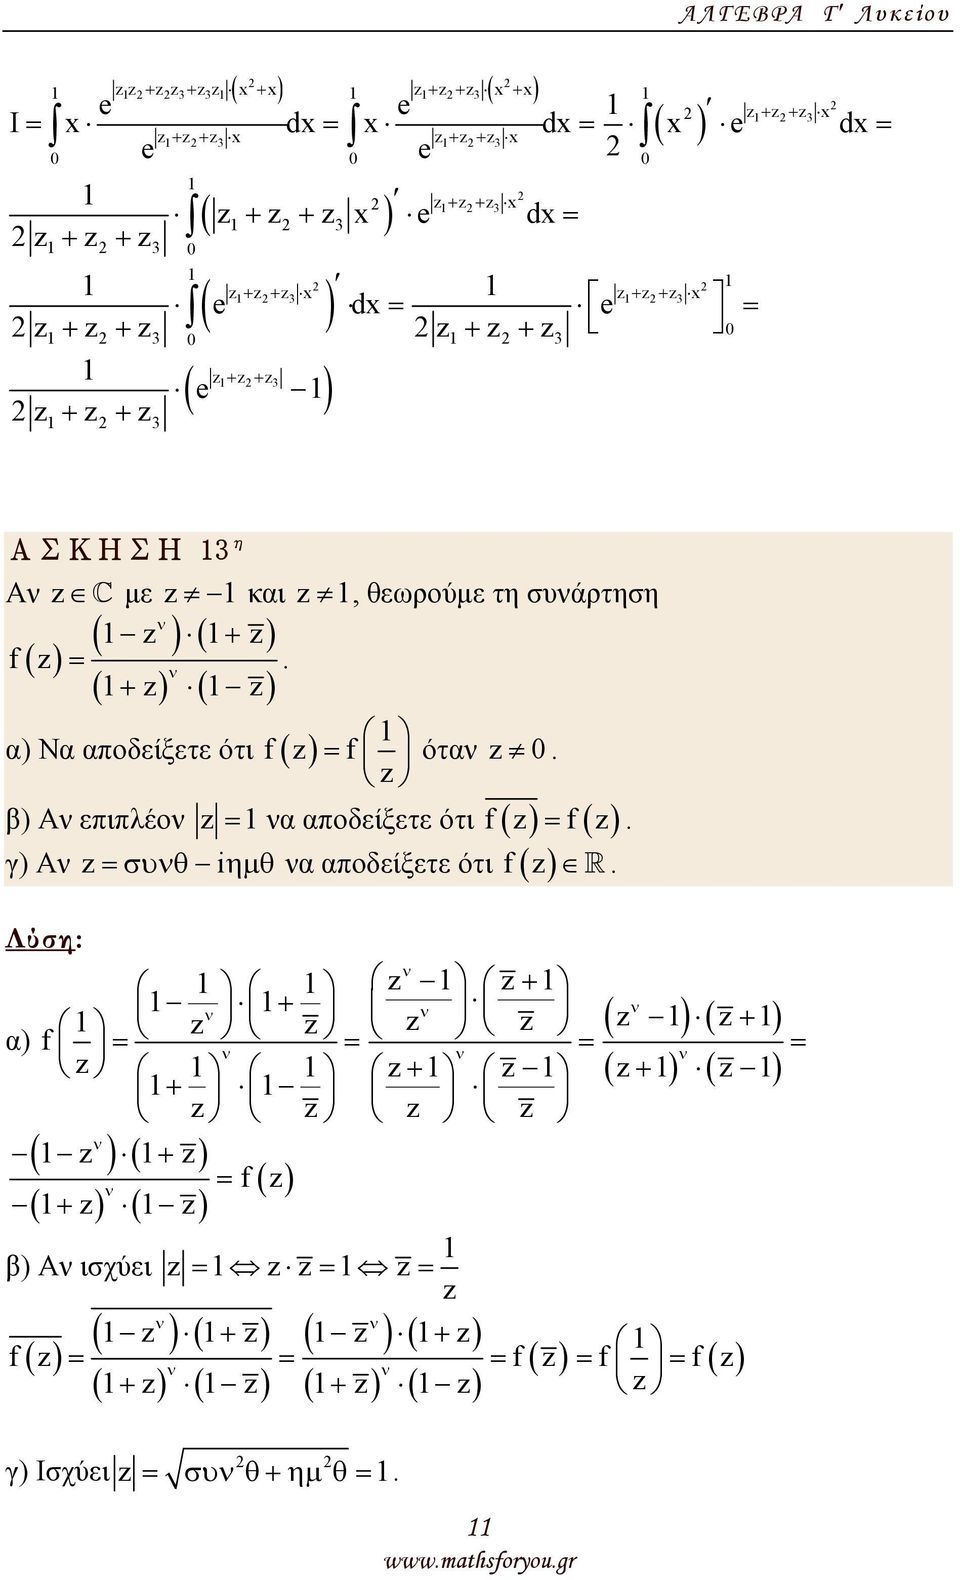 Α επιπλέο f = f ότα 0 = α αποδείξετε ότι = f θ iηµ θ f γ) Α =συ α αποδείξετε ότι + α) f = = + ( ) ( + ) = f ( ) + β) Α ισχύει f = =